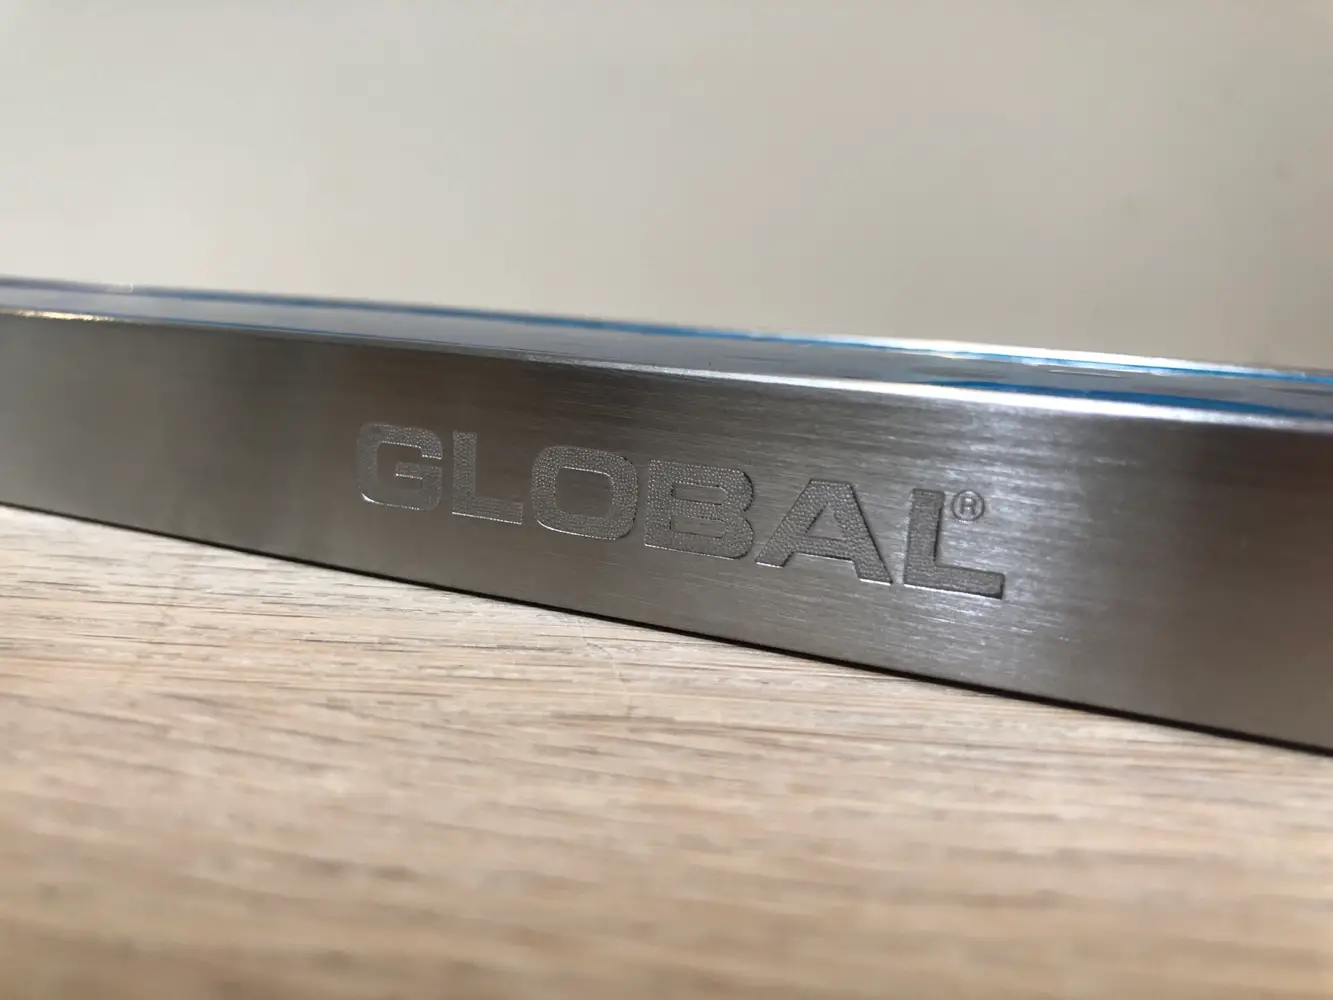 Global Knivmagnet